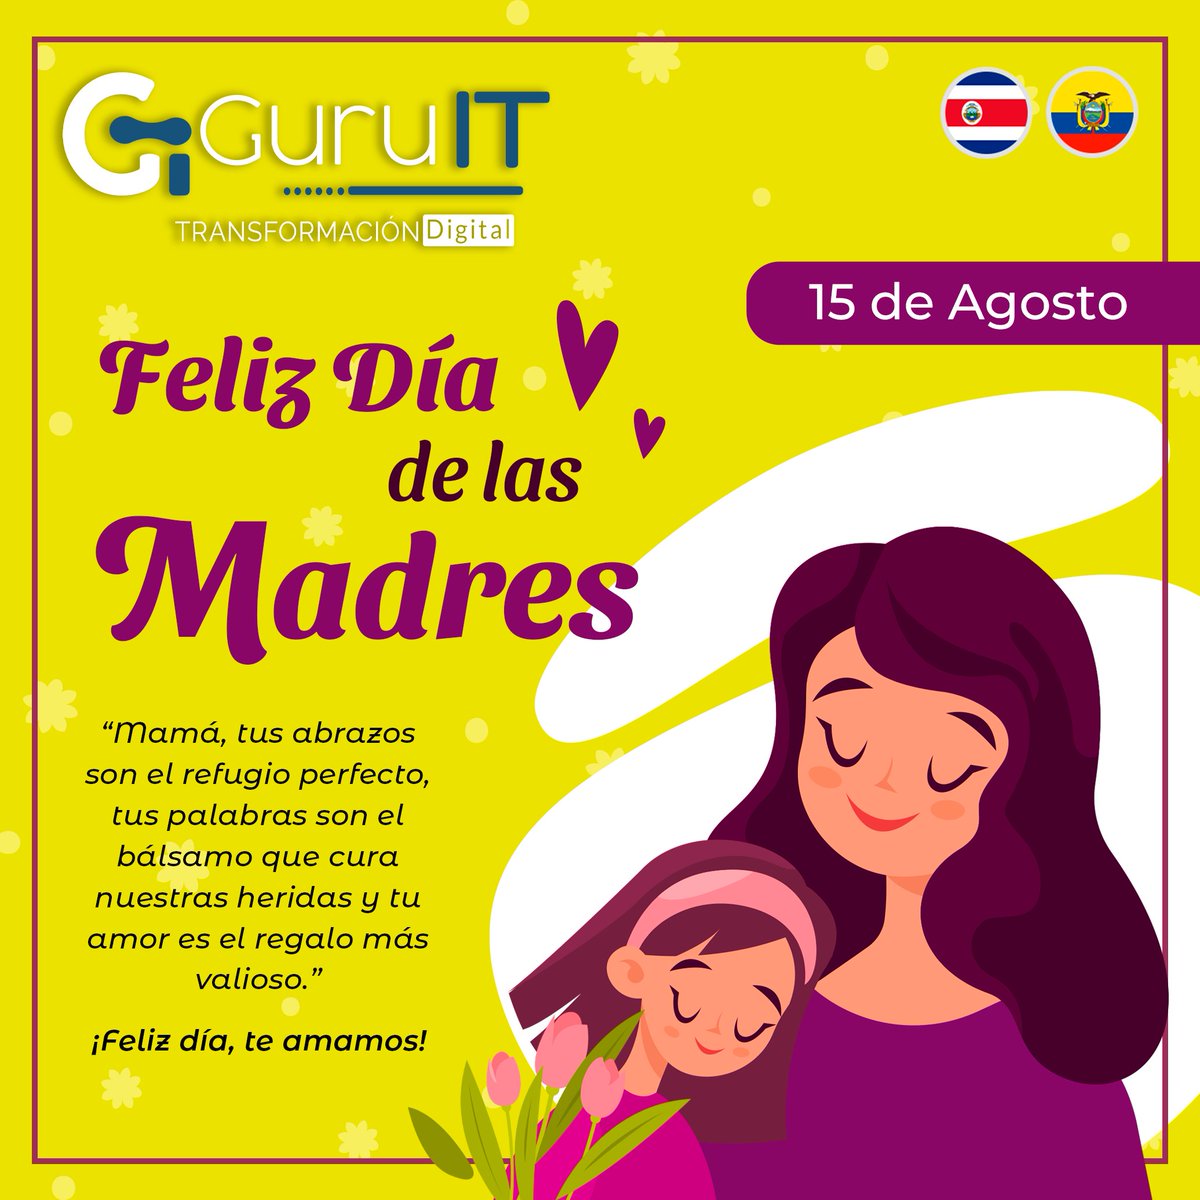 ¡Que hoy esté colmado de cariño y momentos memorables! ¡Feliz Día de las Madres, Costa Rica! 🌸🎉

#Guruit #guruitlatam #transformaciondigital #15deagosto #FelizDíaMamá #UnidosEnAmor #amormaternal #FelicidadesMadres